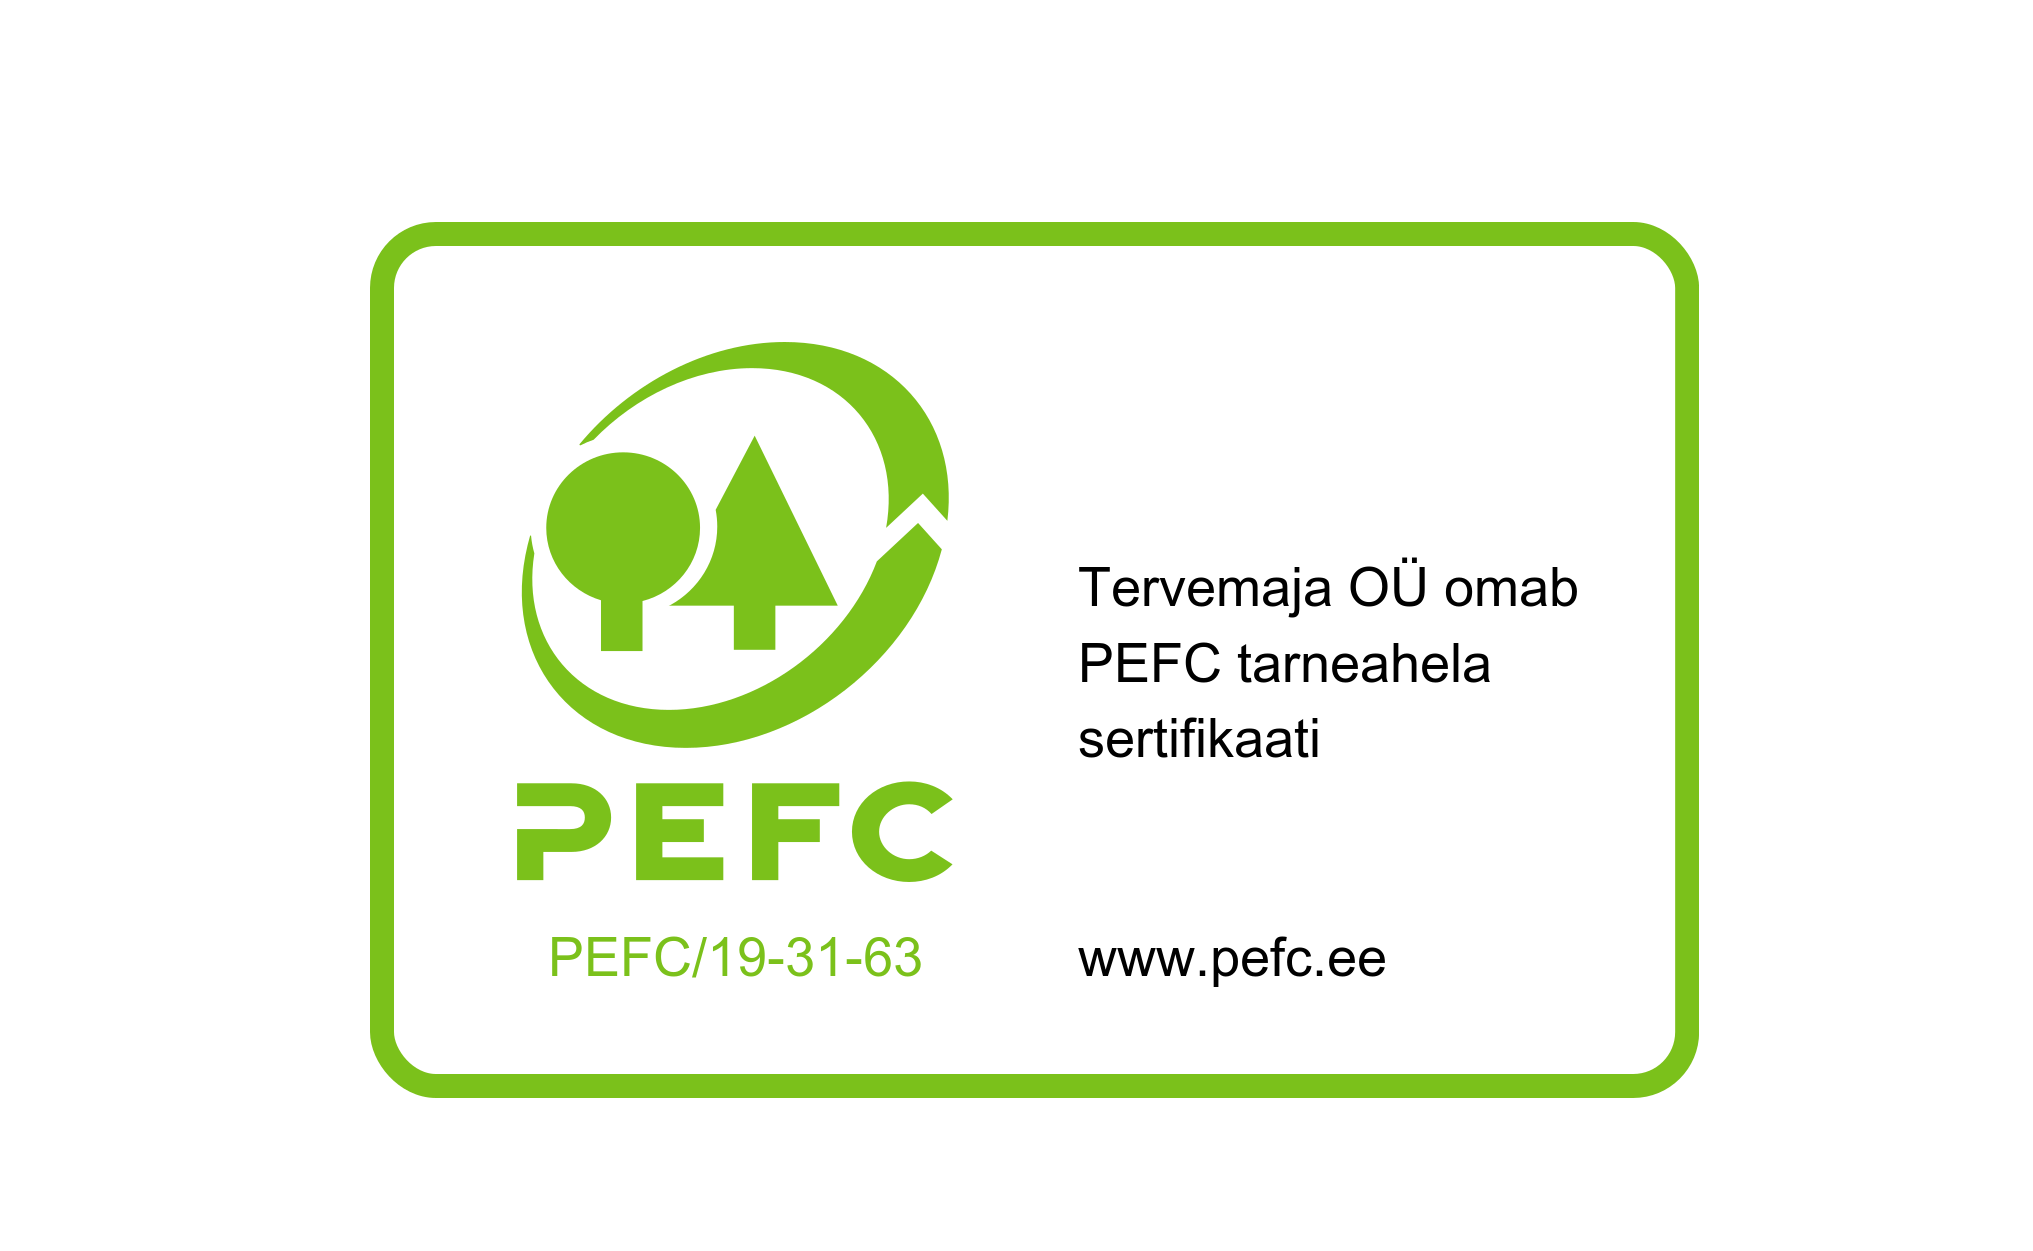 pefc-label-pefc19-31-63-tervemaja_tarneahela-sertifikaat-ver